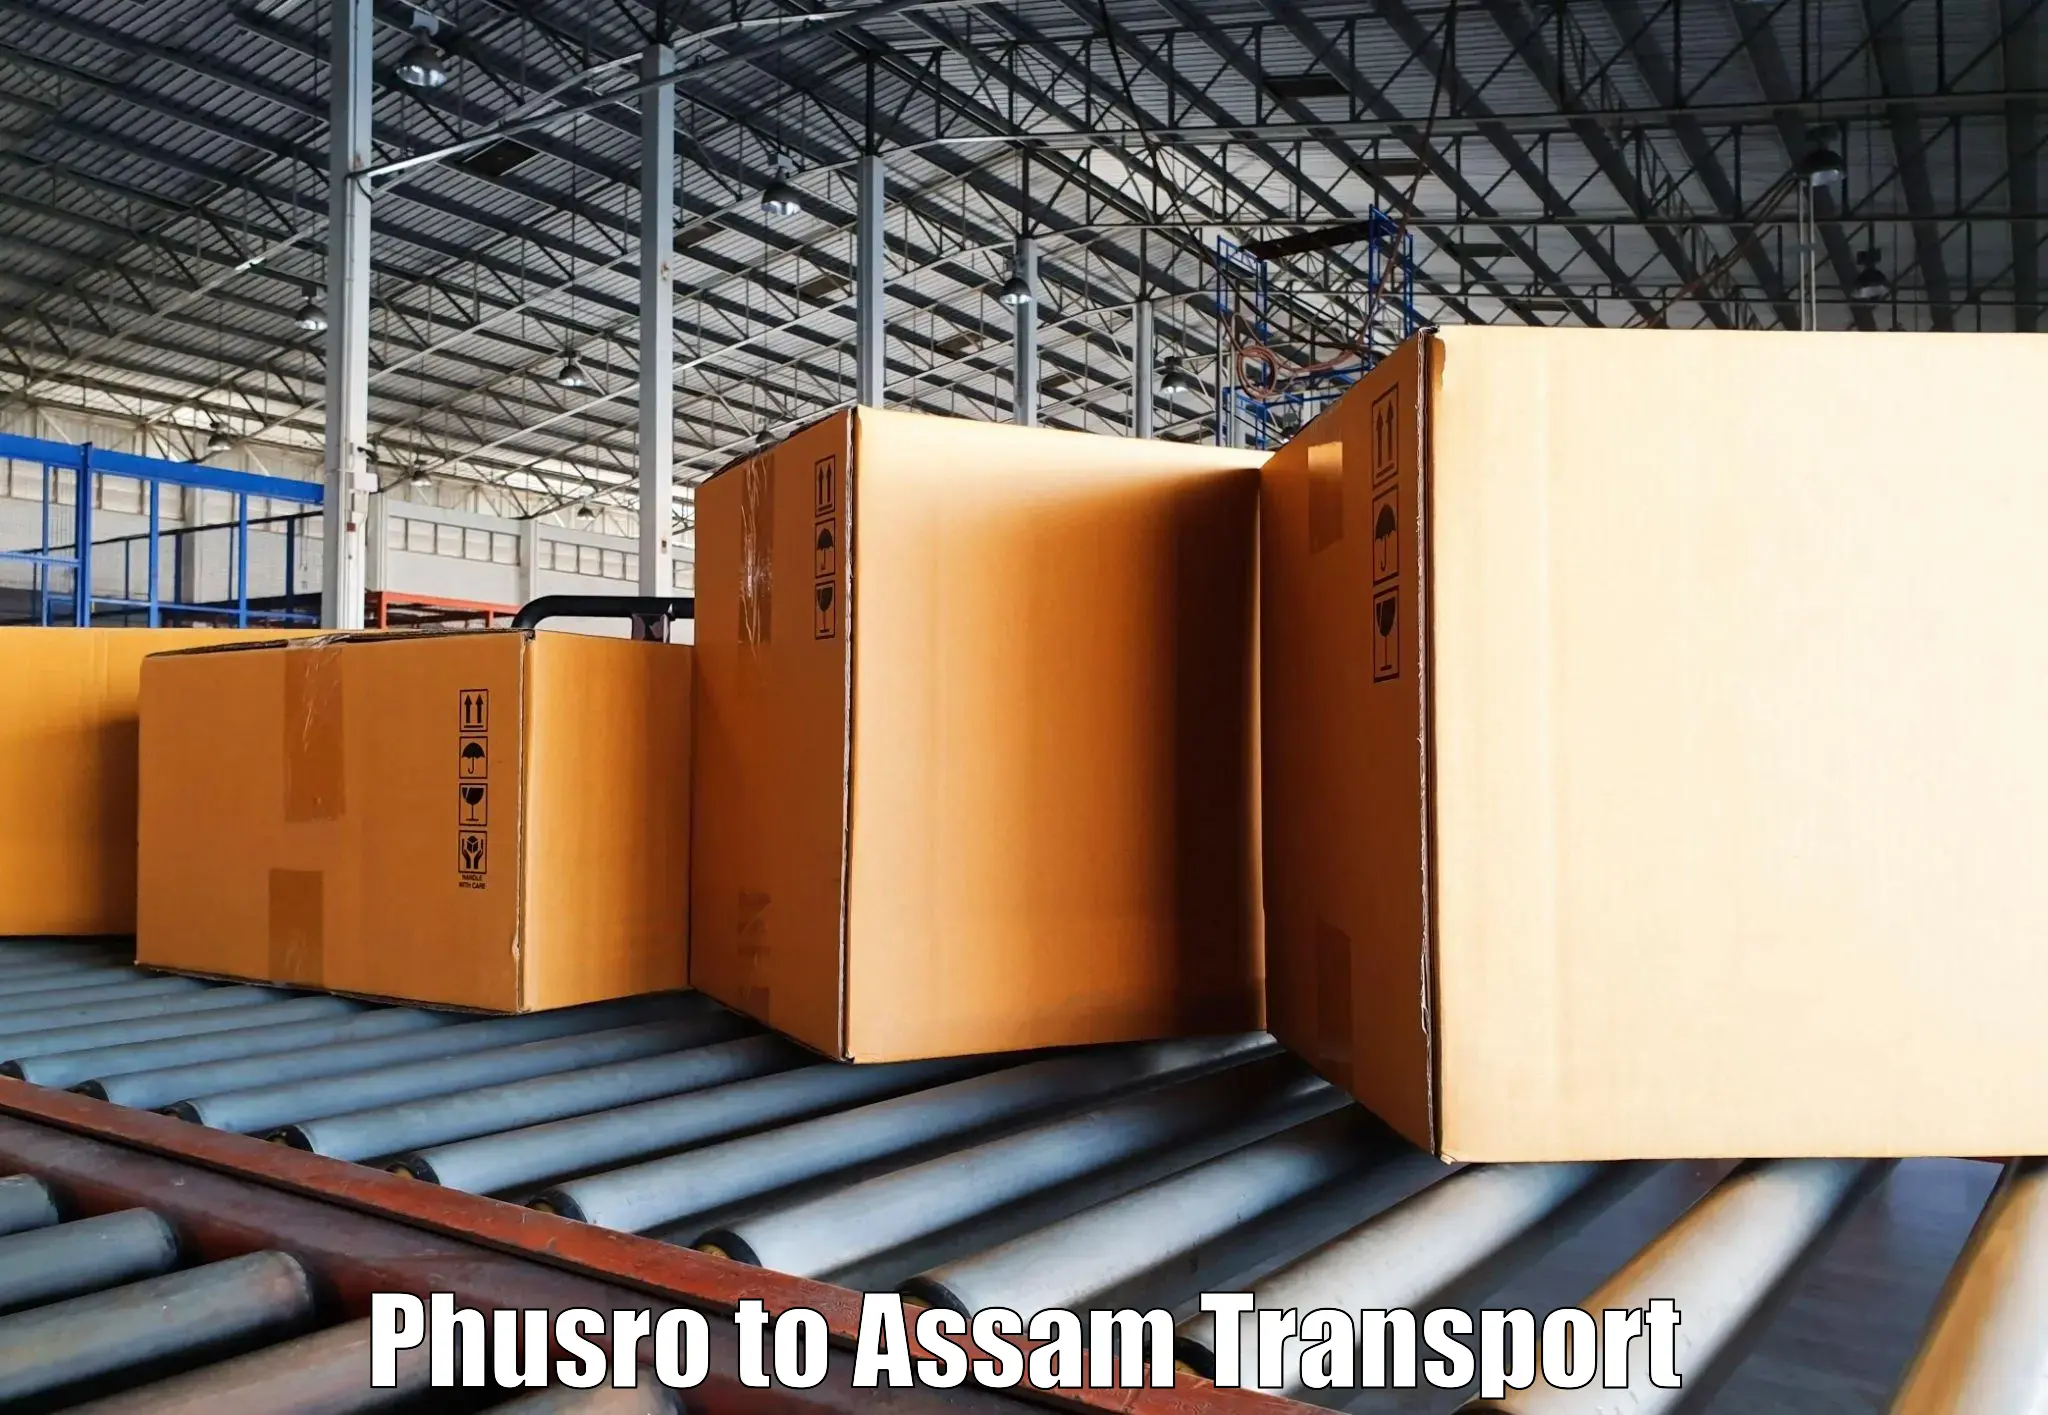 Transport in sharing Phusro to Kamrup